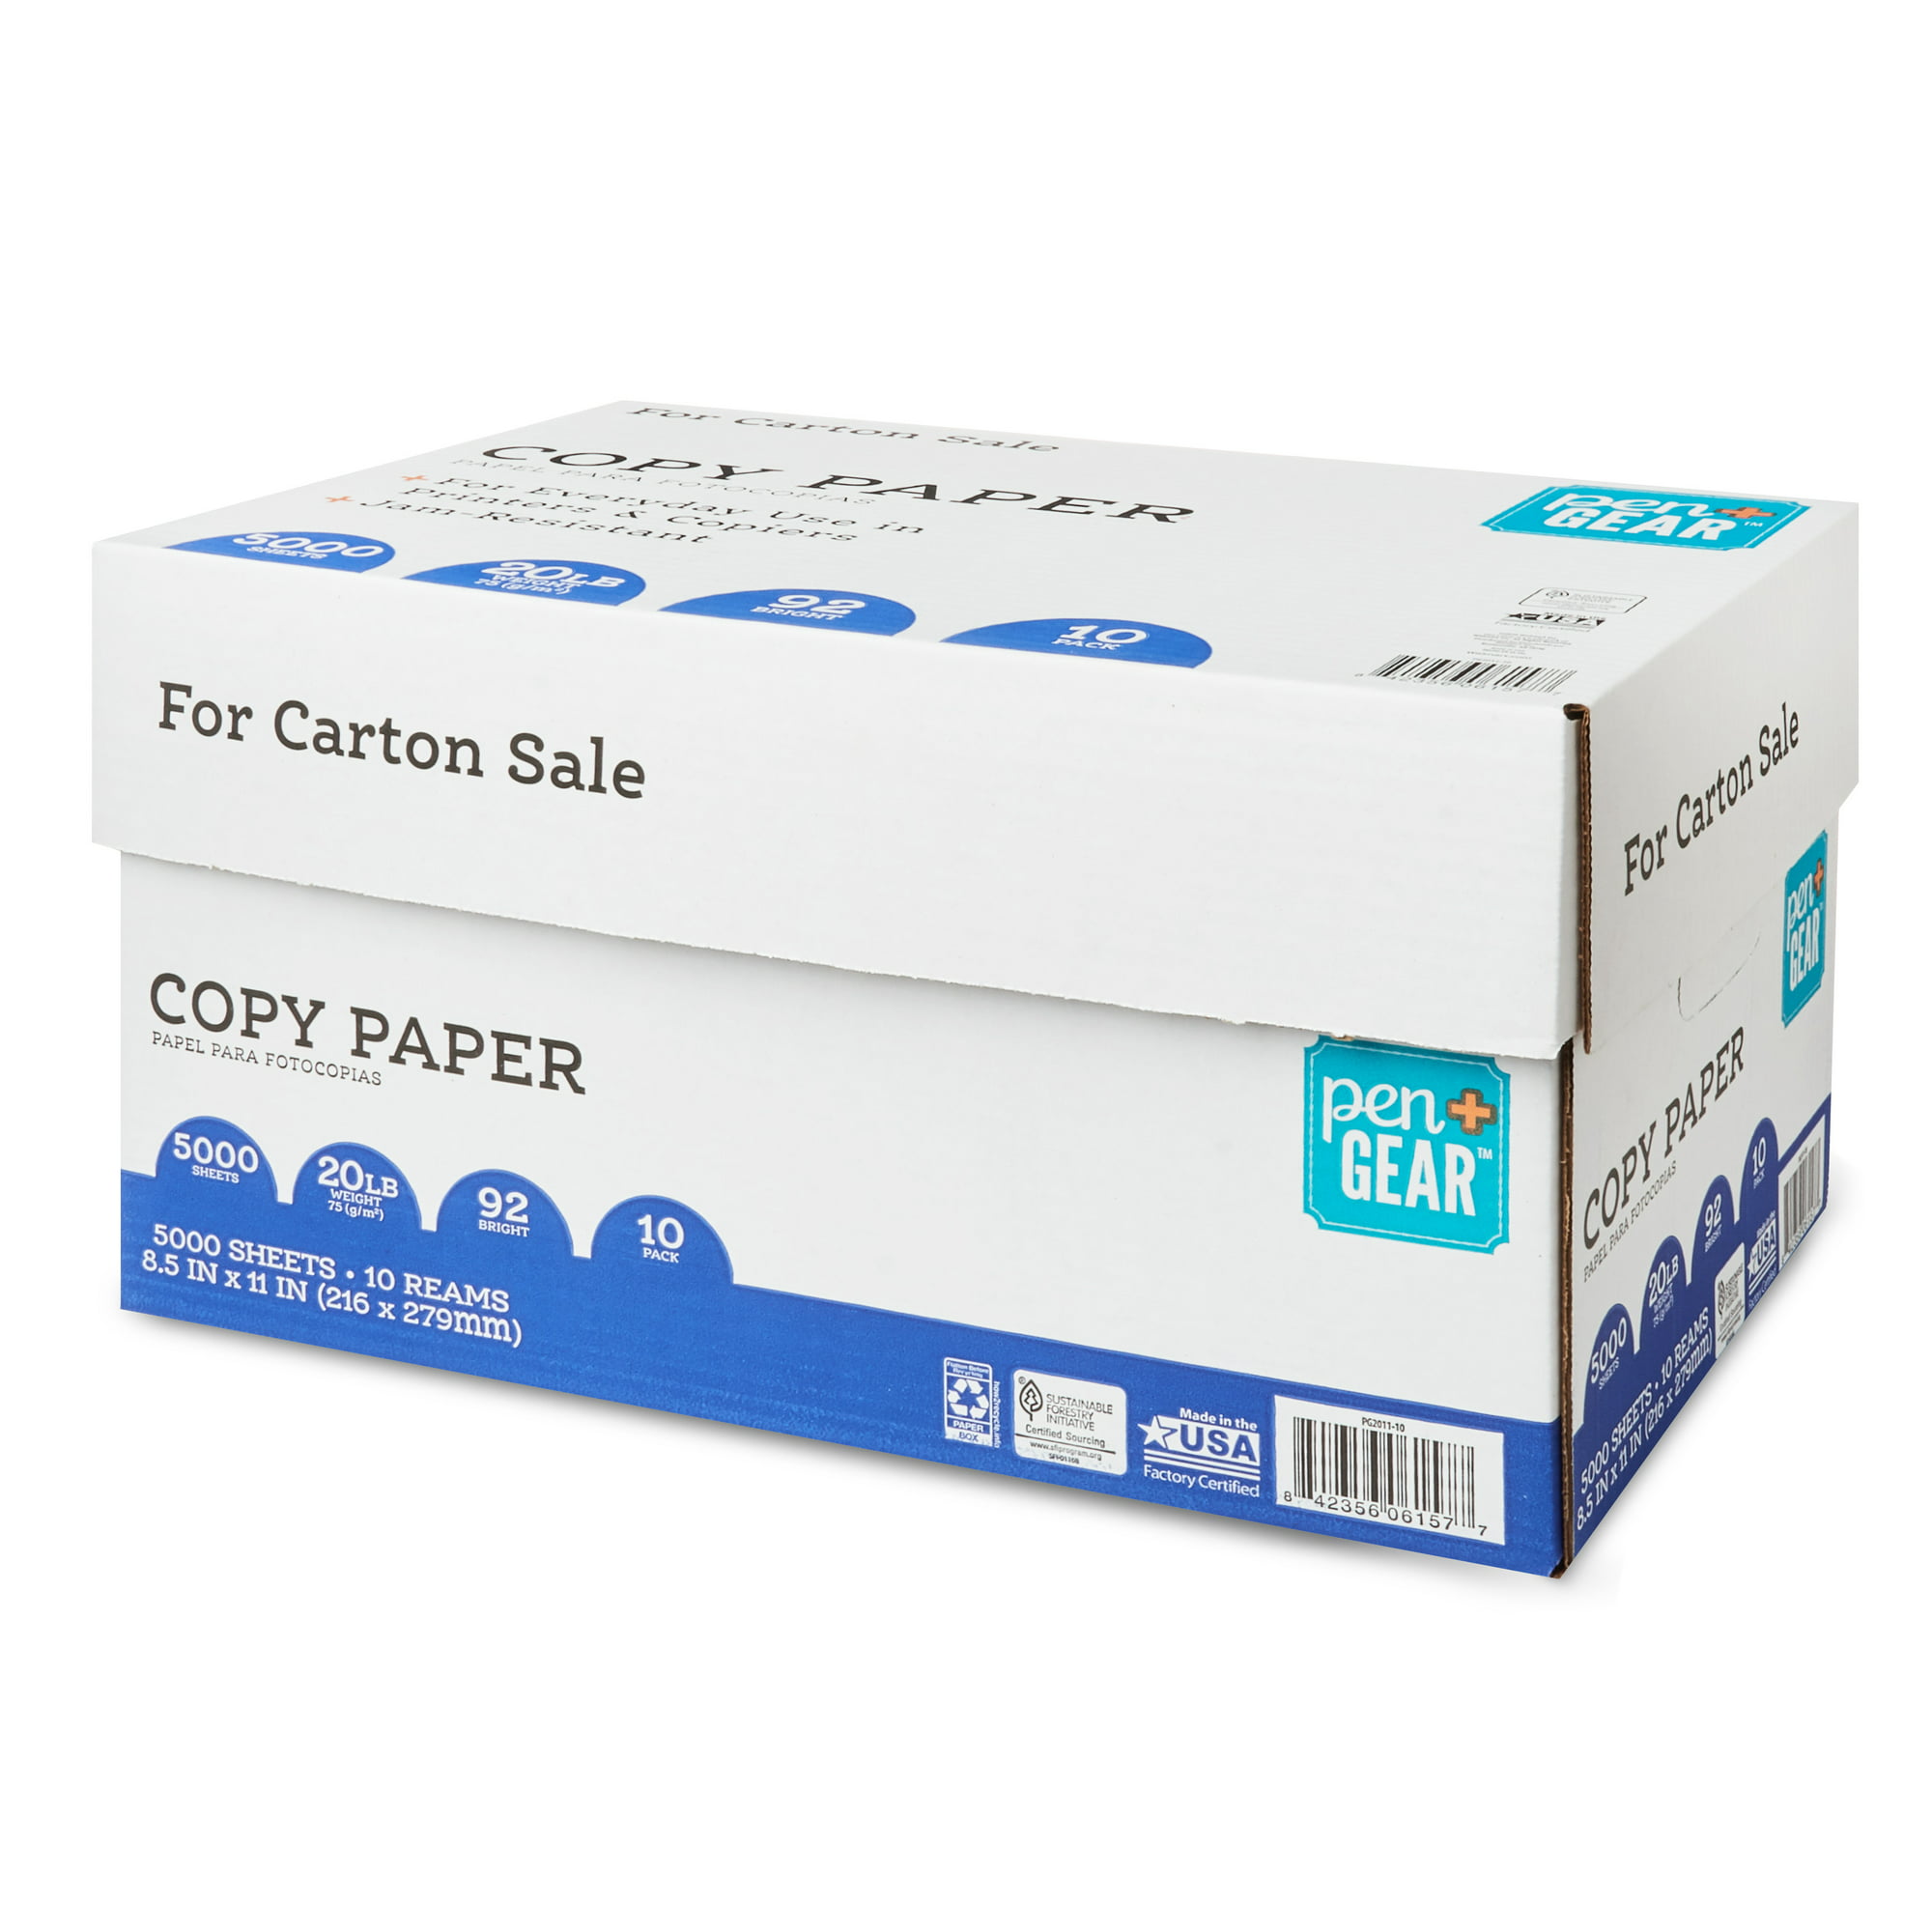 Pen+Gear Copy Paper 8.5" x 11" 92 Bright 20lb 10 Reams (5000 Sheets